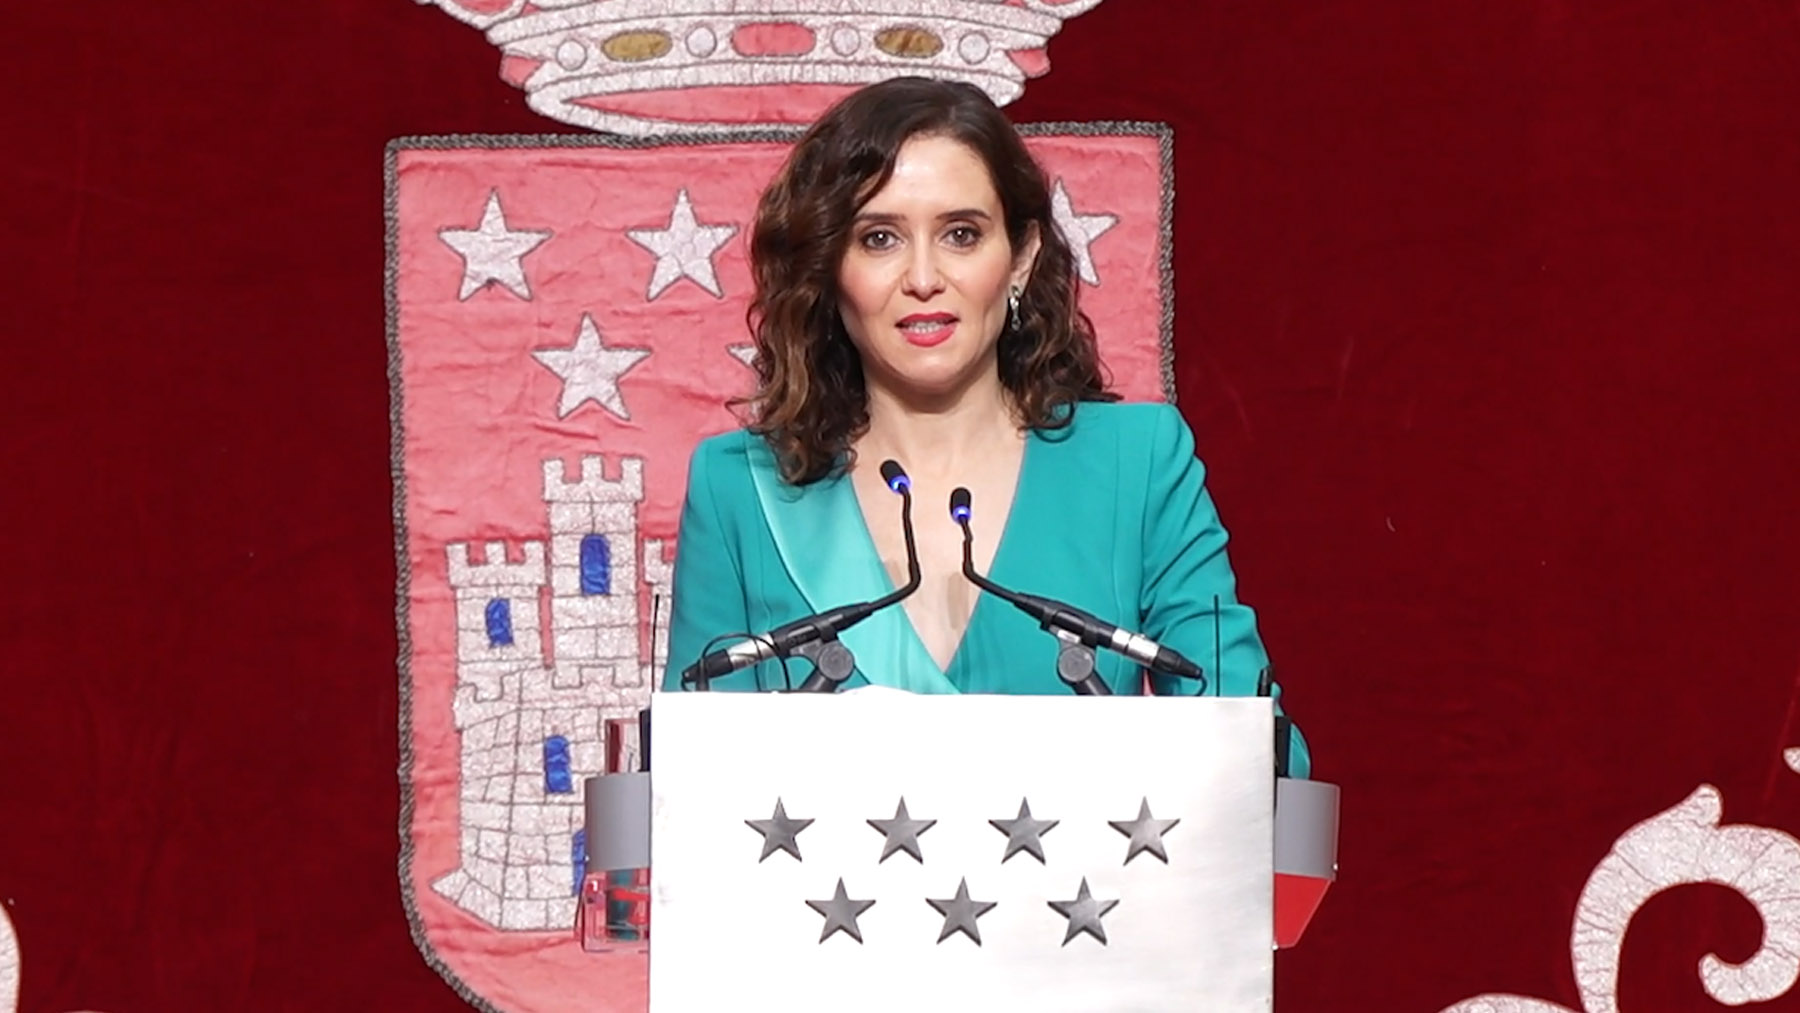 La presidenta de la Comunidad de Madrid, Isabel Díaz Ayuso.